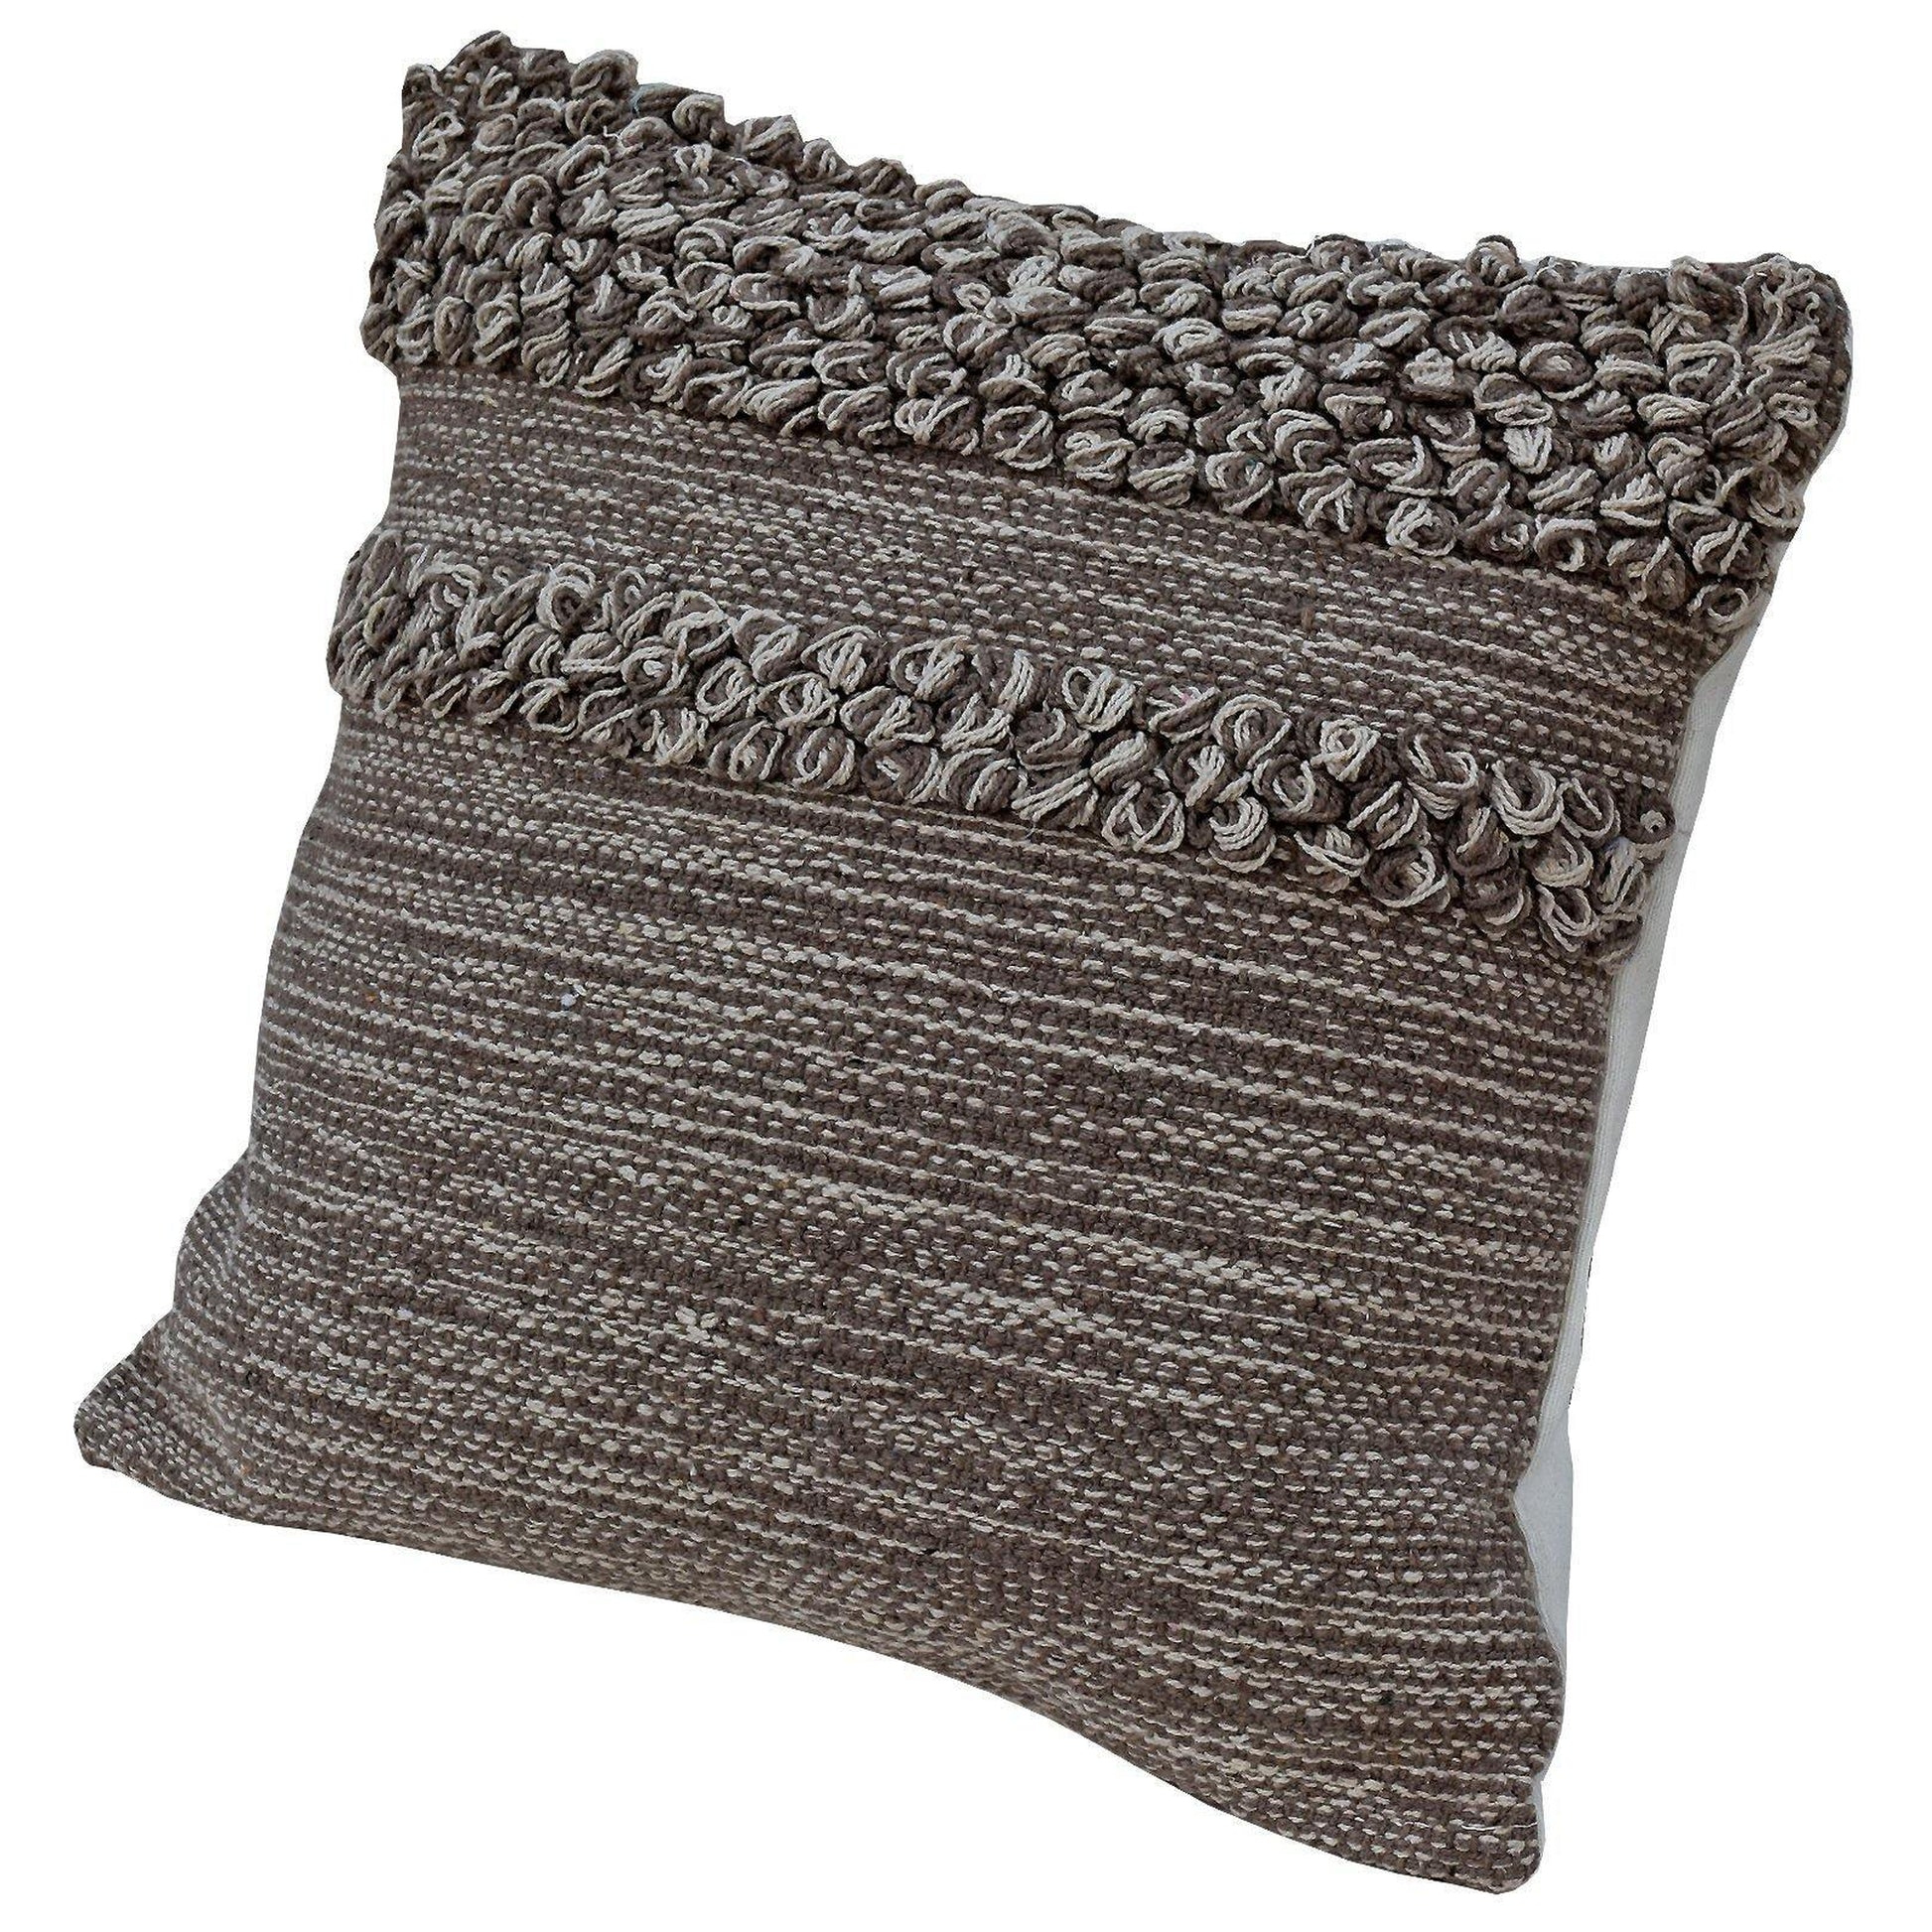 18" Designer Cushion Cover- Brown Ruffles - The Teal Thread